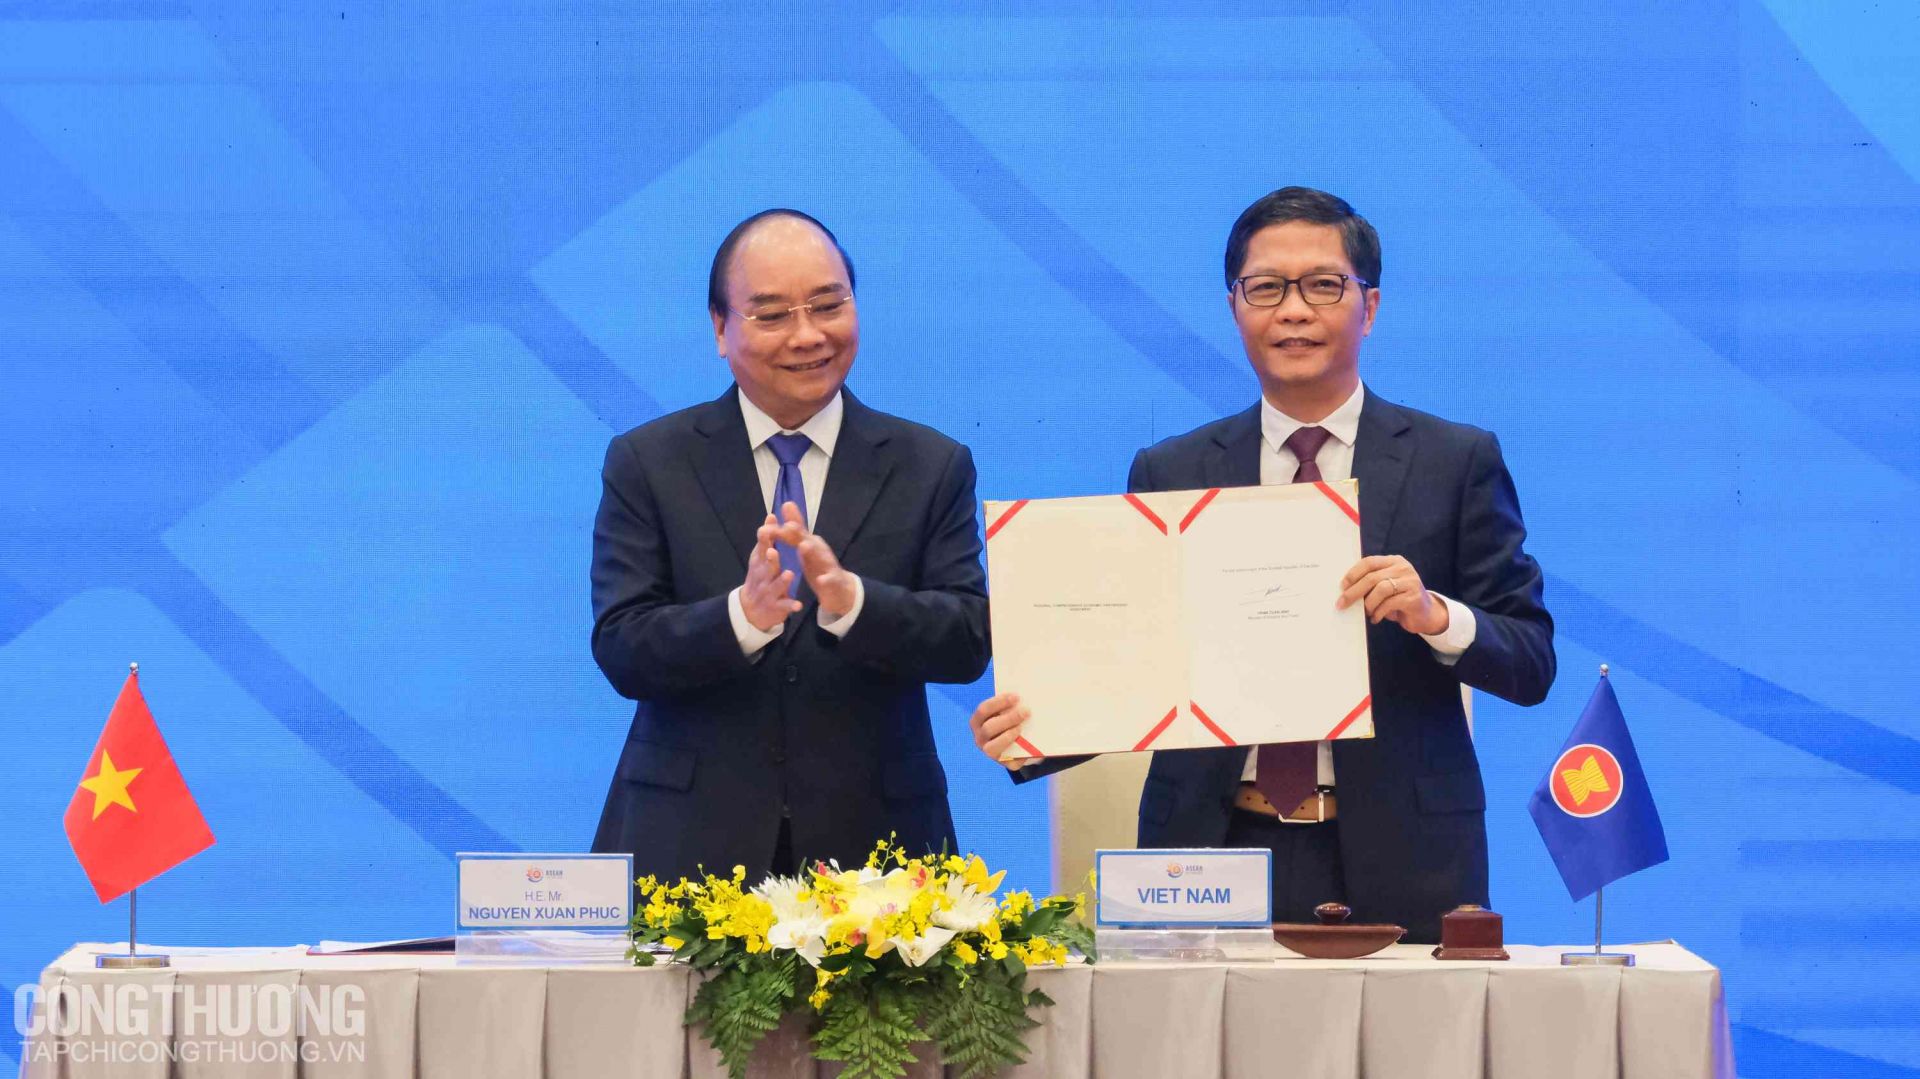 Bộ trưởng Trần Tuấn Anh đại diện Việt Nam ký kết Hiệp định dưới sự chứng kiến của Thủ tướng Nguyễn Xuân Phúc